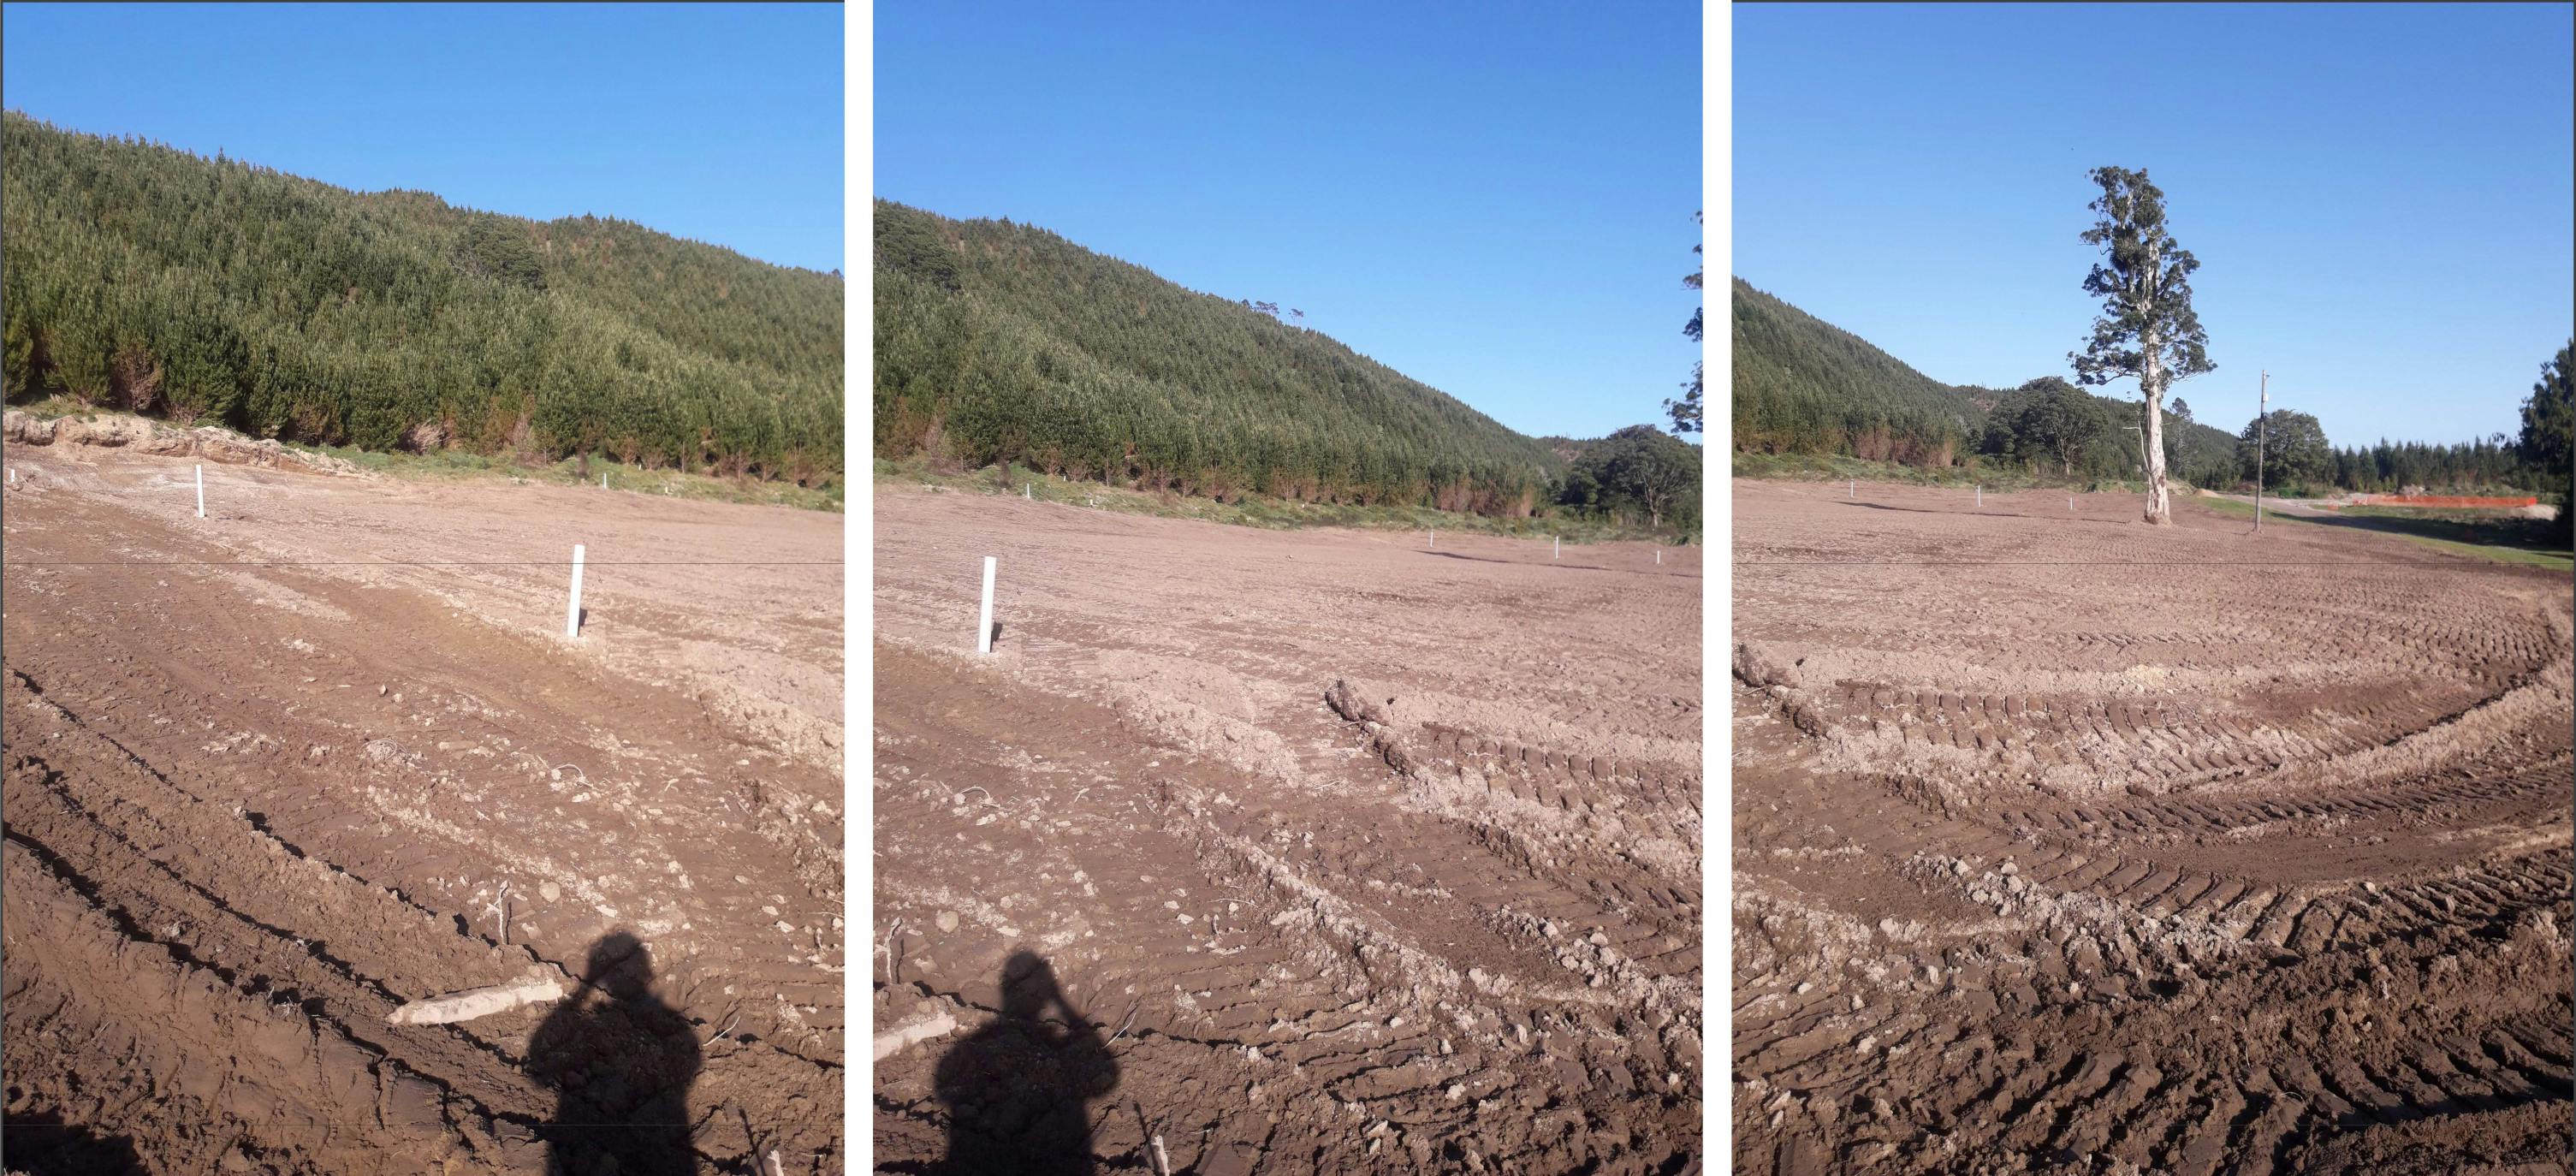 Captured: 27 August 2018 - Preparation at the effluent irrigation field 